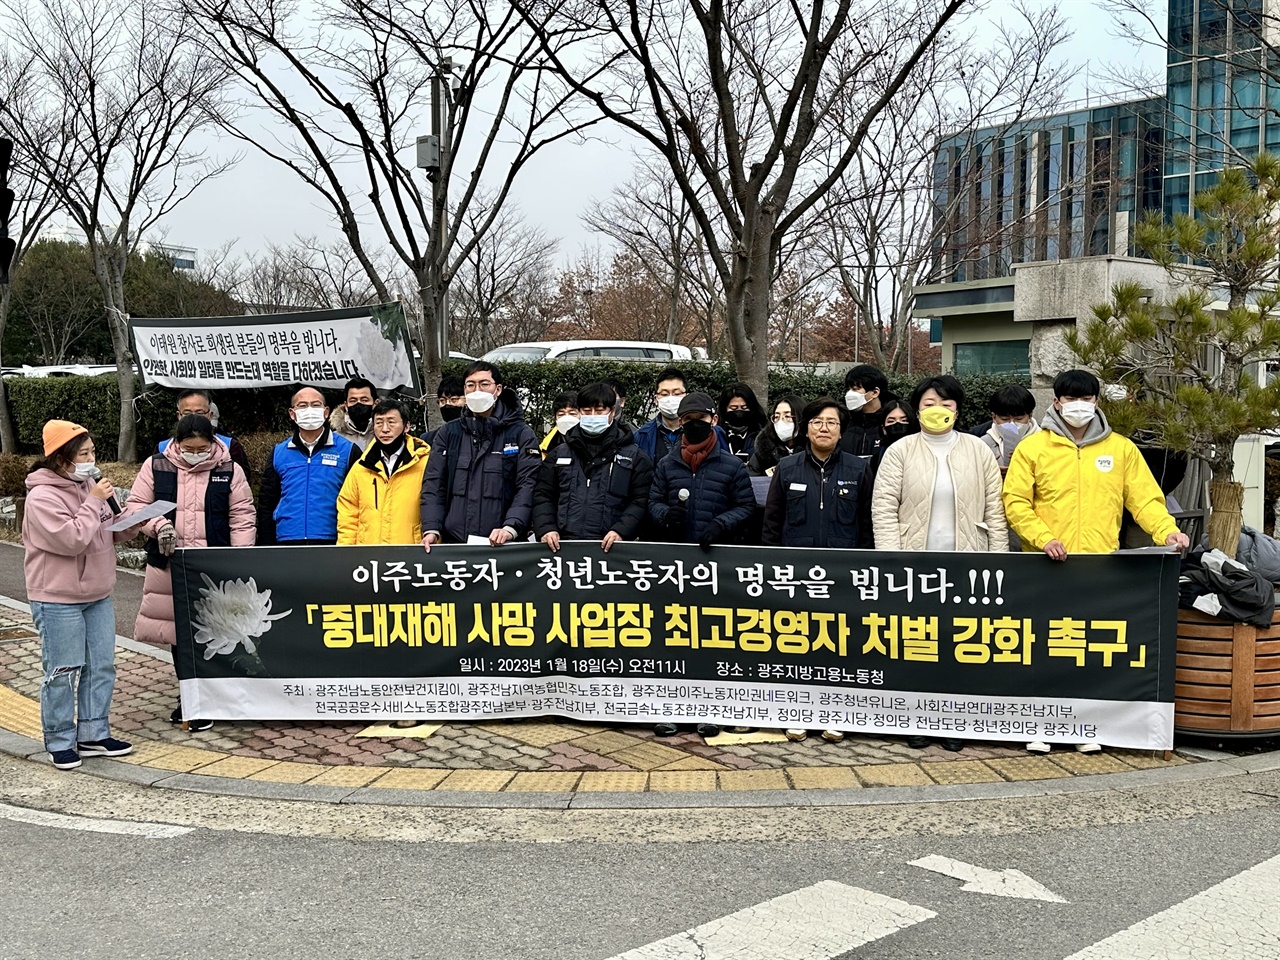 18일, 광주시민사회단체들이 광주지방고용노동청 앞에서 기자회견을 진행하고 있다.